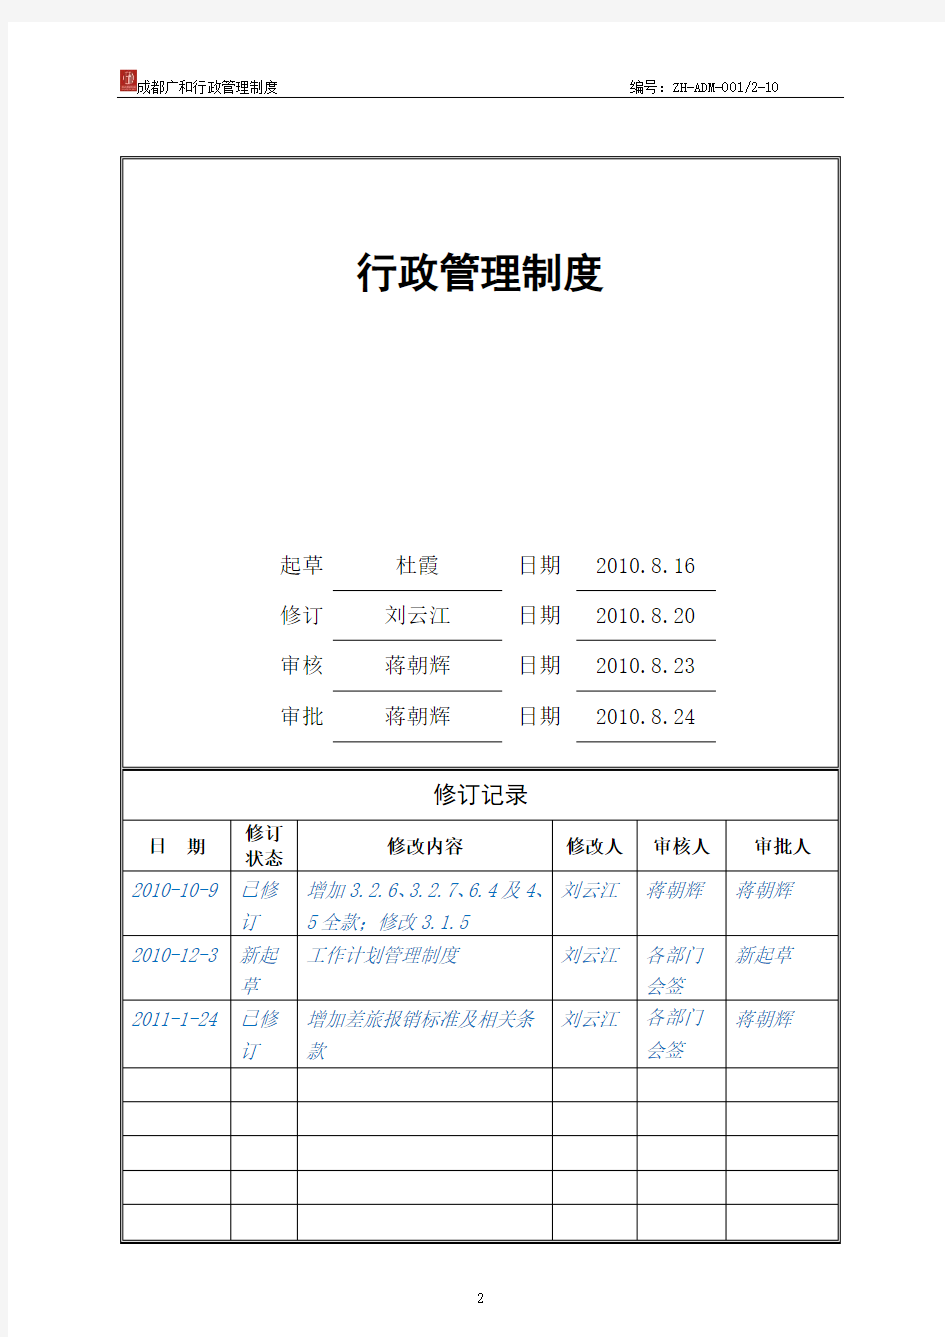 行政管理制度 2010年8月第一版(20110110定稿)